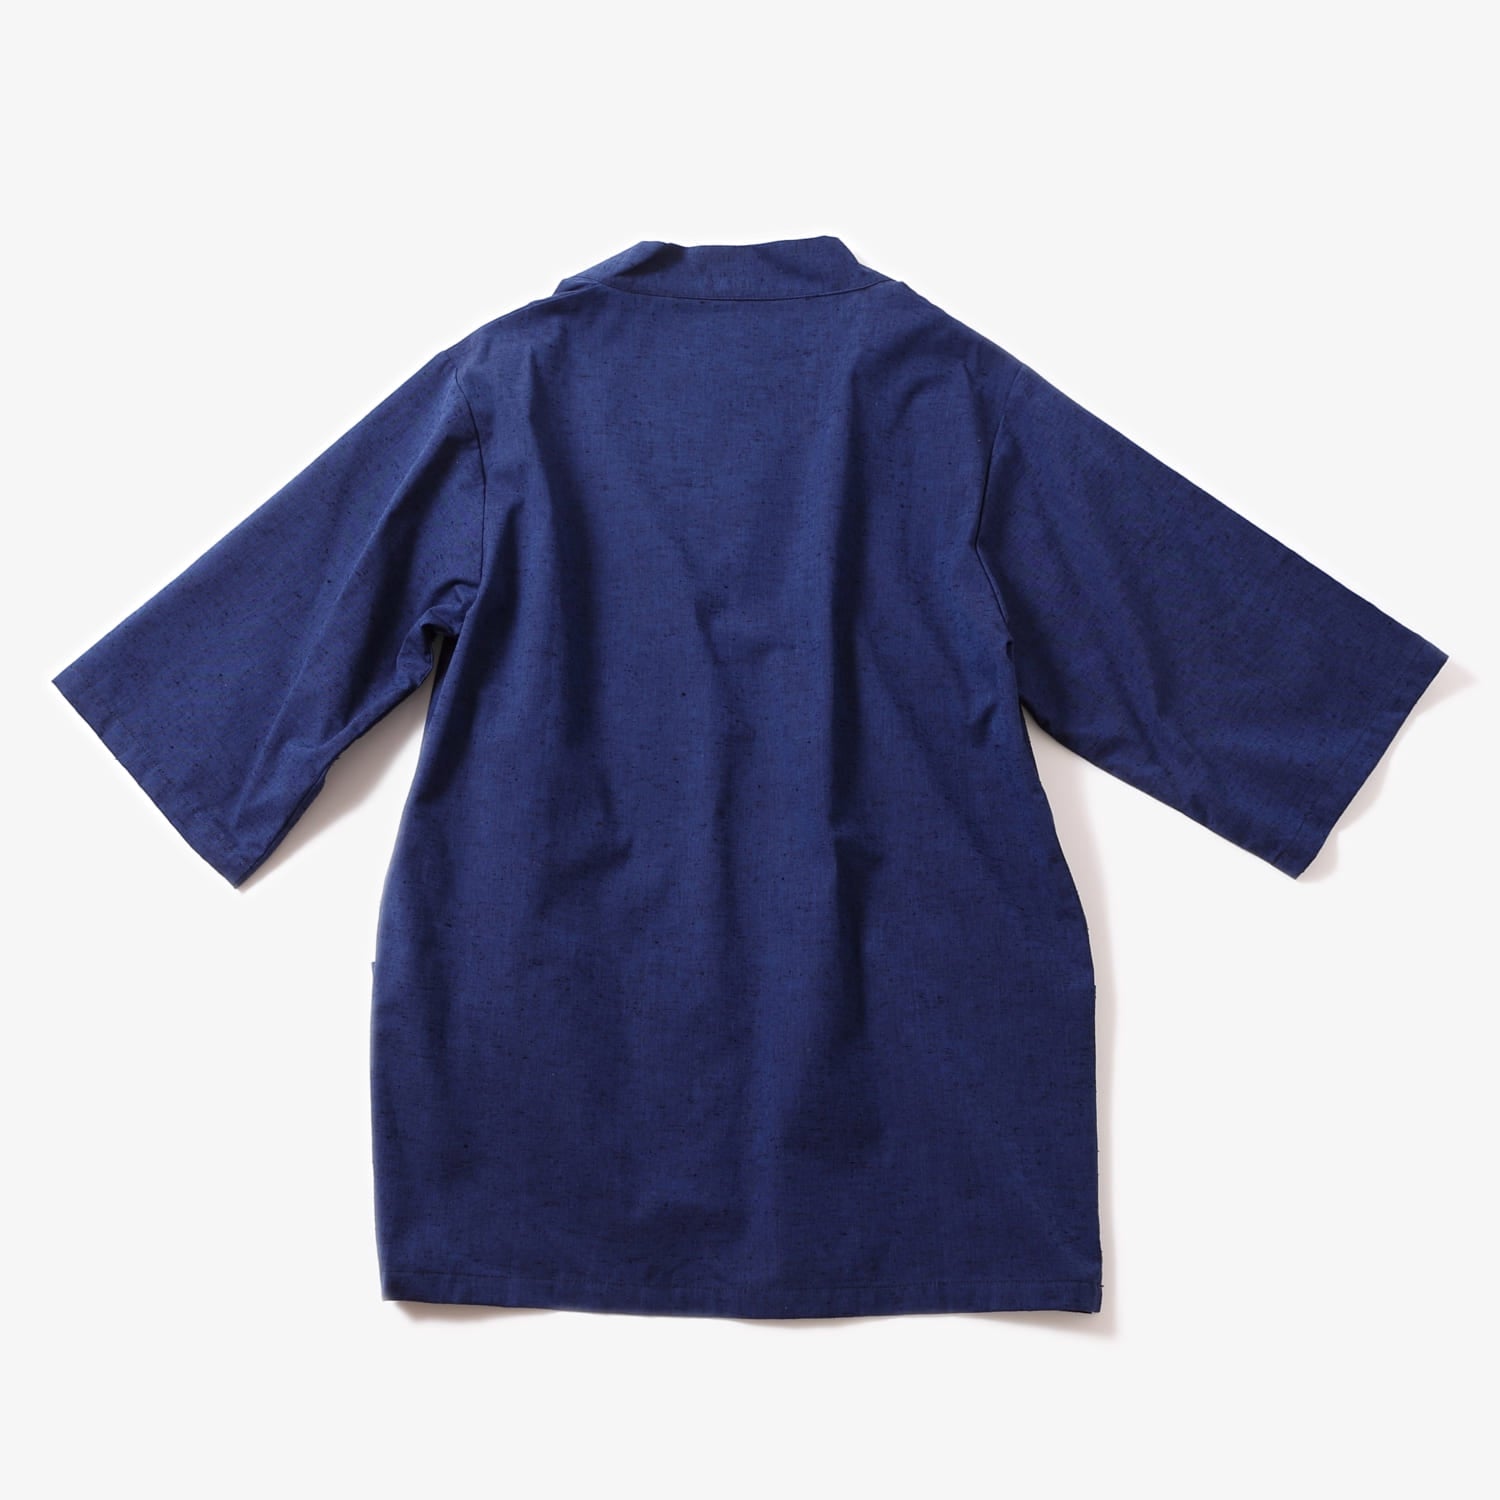 Haori Jacket (Japan Blue) - Kimono Style